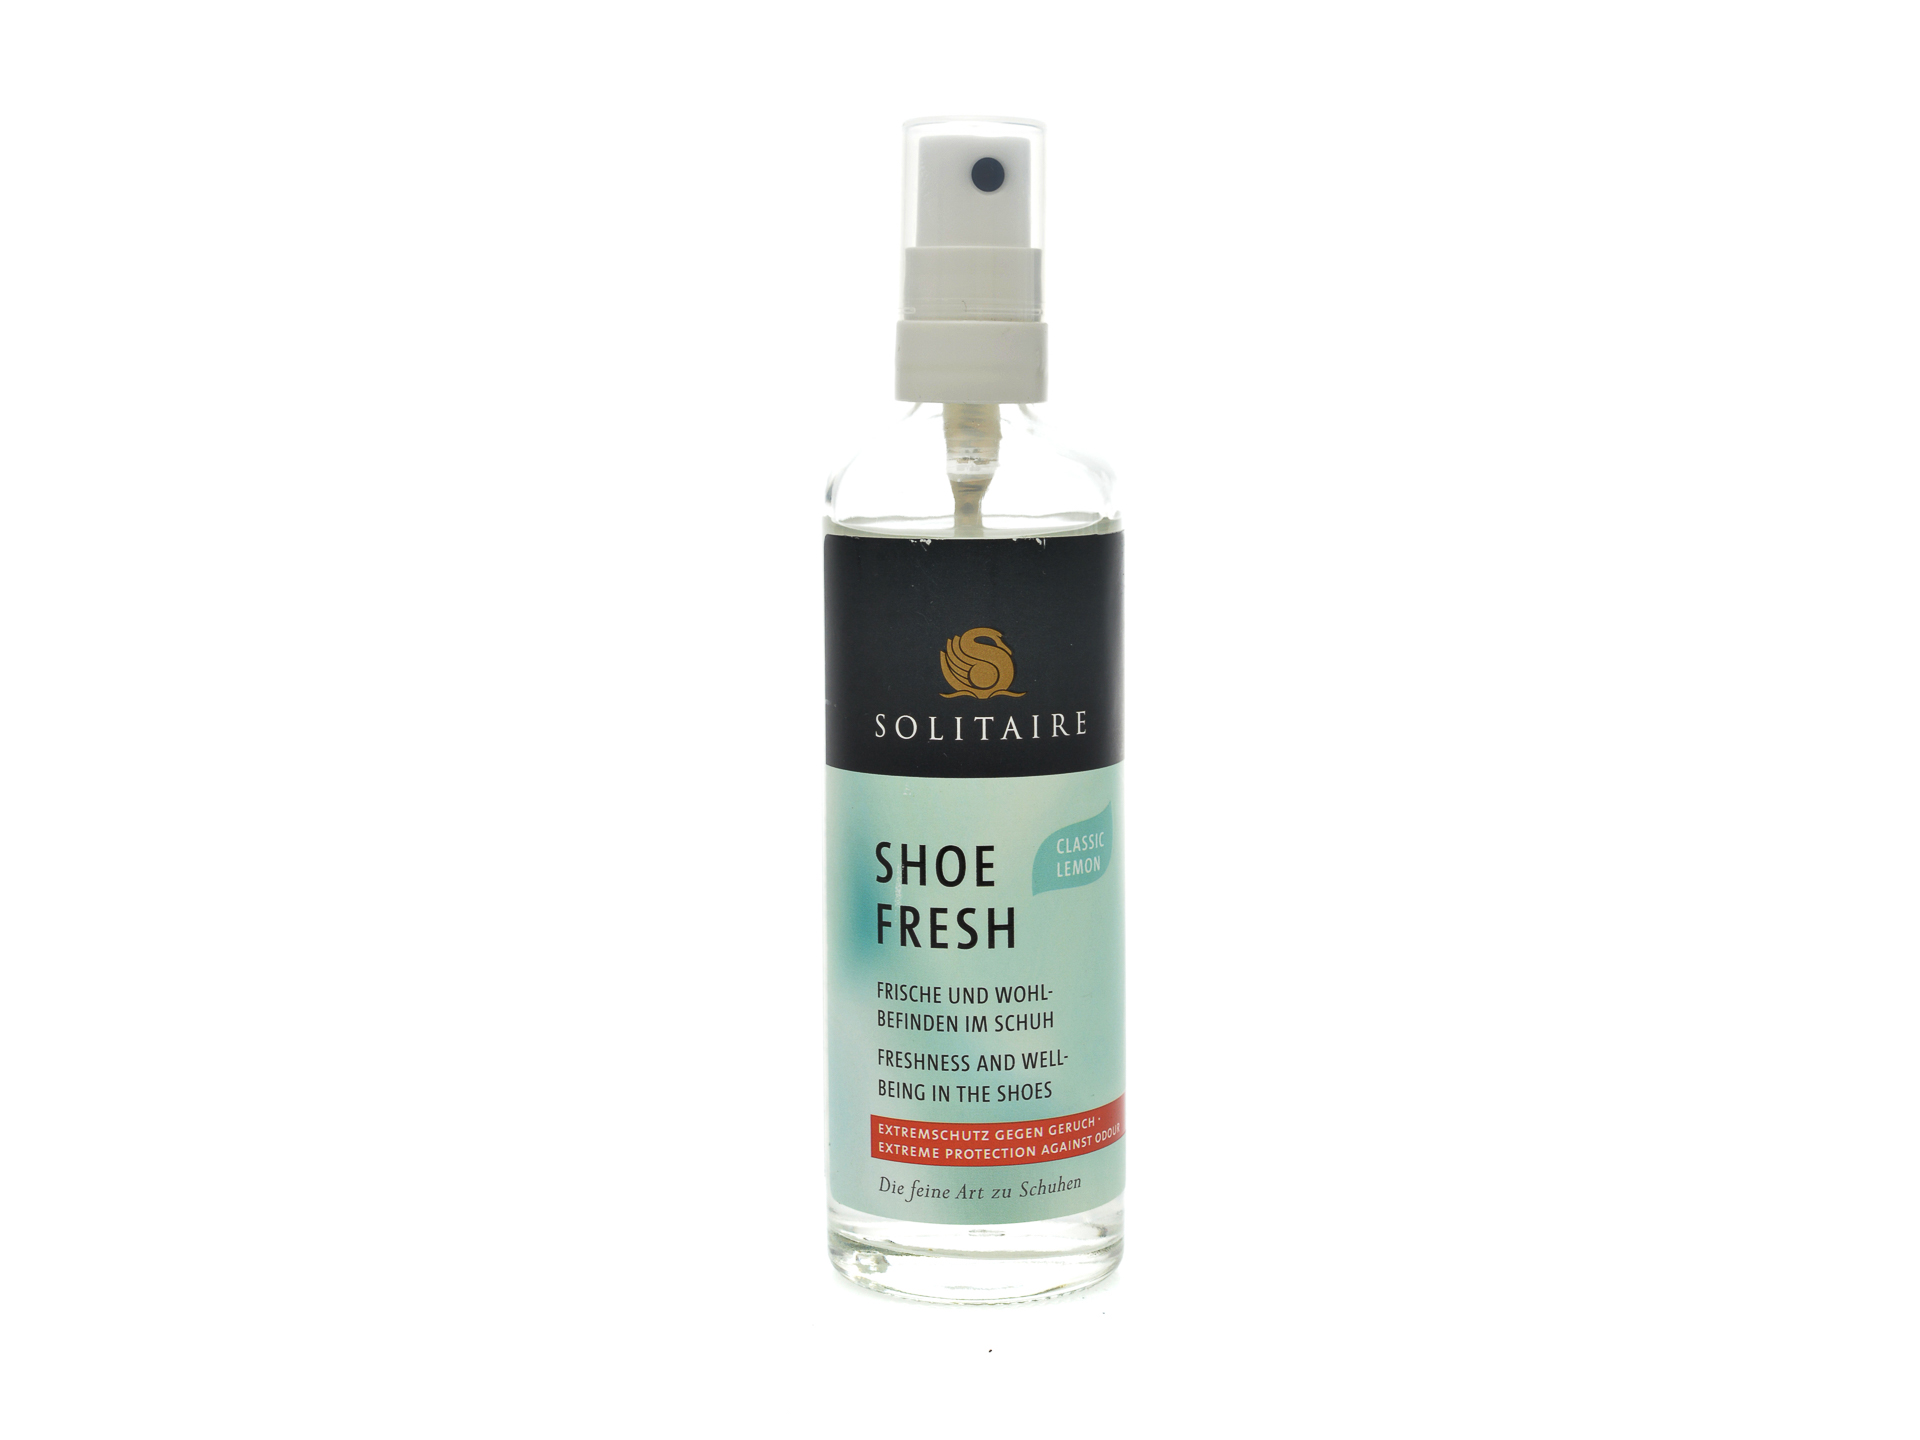 PR Spray pentru mentinerea mirosului placut in incaltaminte, Solitaire ACCESORII/Produse